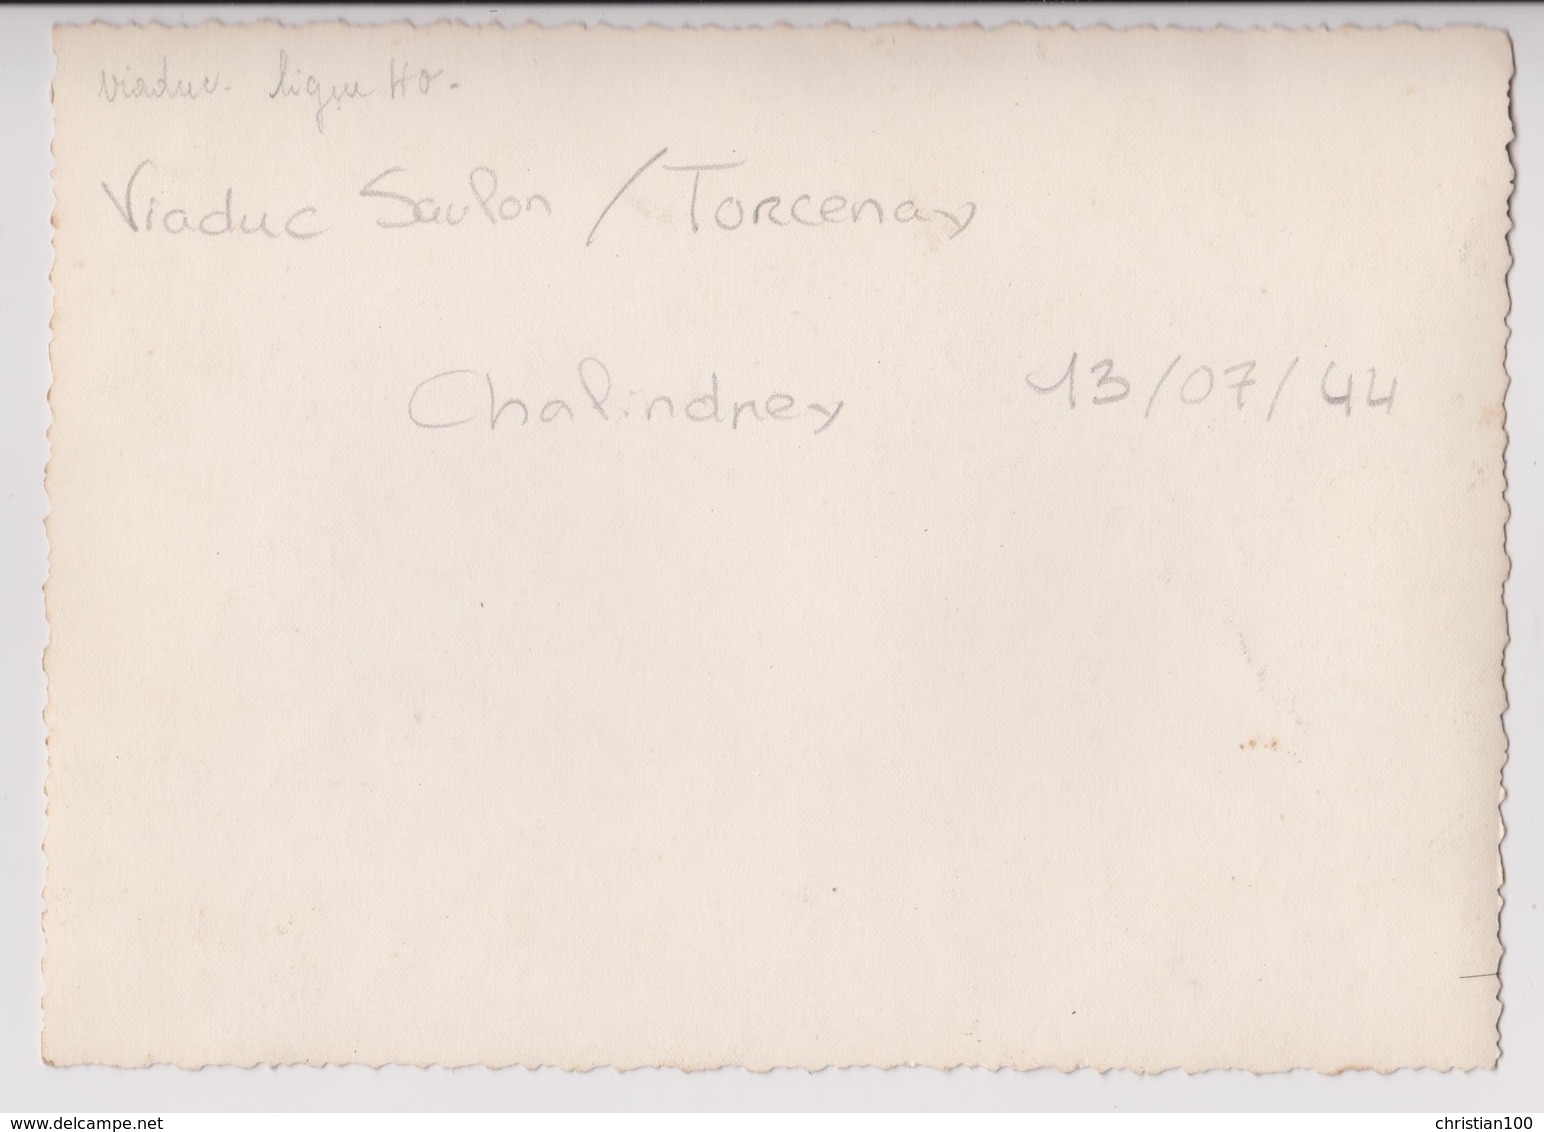 CHALINDREY (HAUTE MARNE) :  VIADUC DE TORCENAY BOMBARDE LE 13 JUILLET 1944 - PHOTO 17,5 CM X 12,5 CM - RARE - 4 SCANS - - War, Military